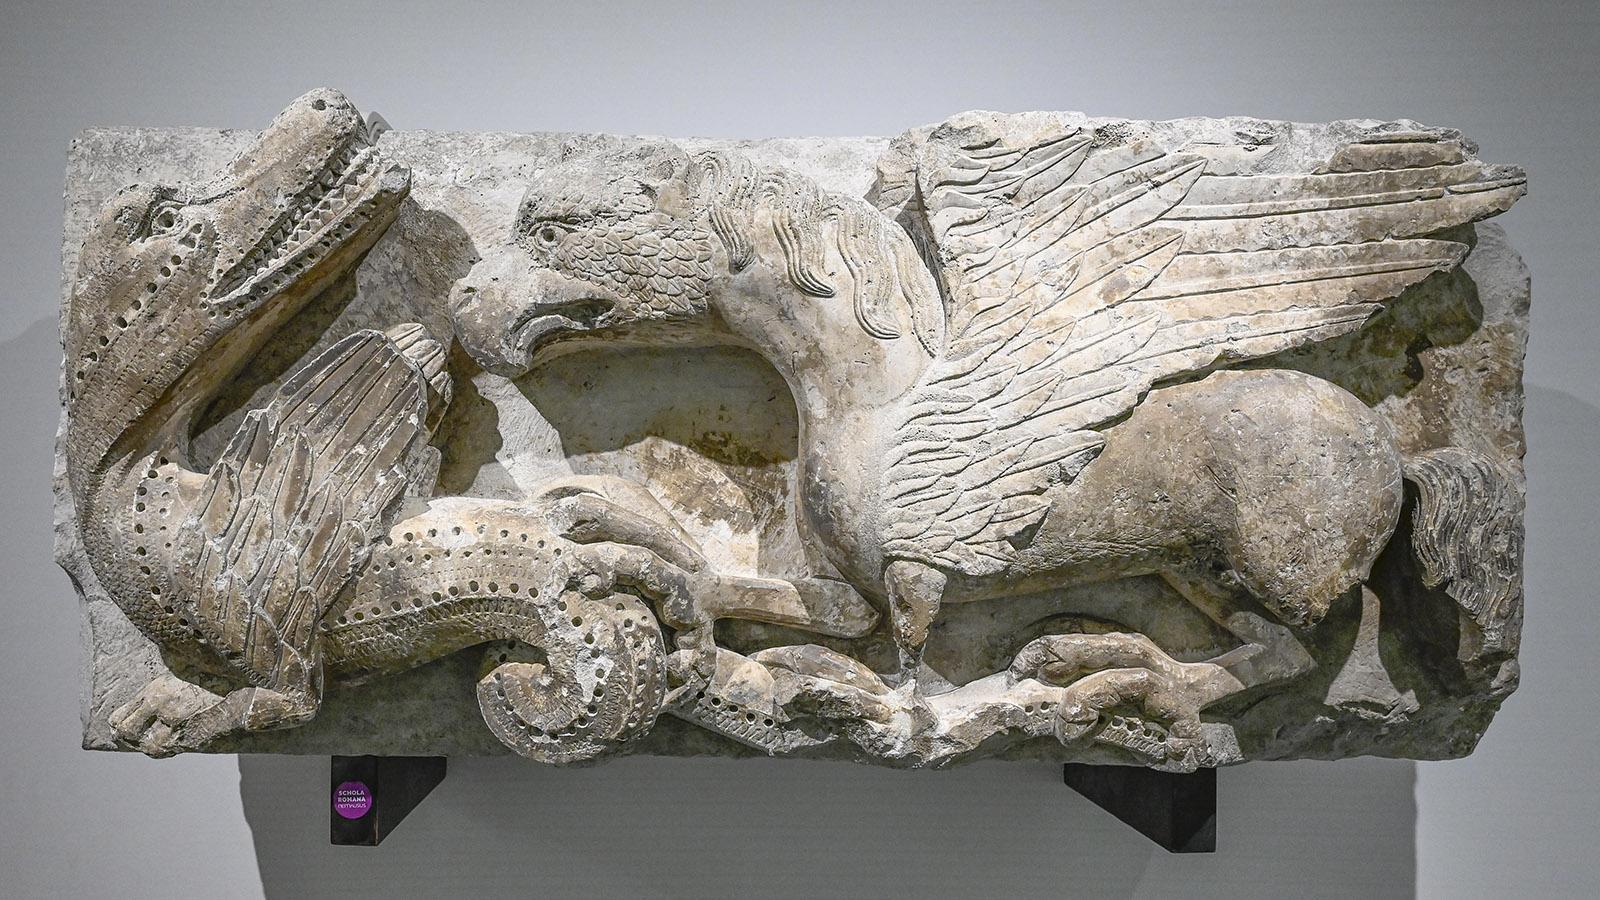 Nîmes: Krokodil oder Drache - Skulptur im Musée de la Romanité. Foto: Hilke Maunder